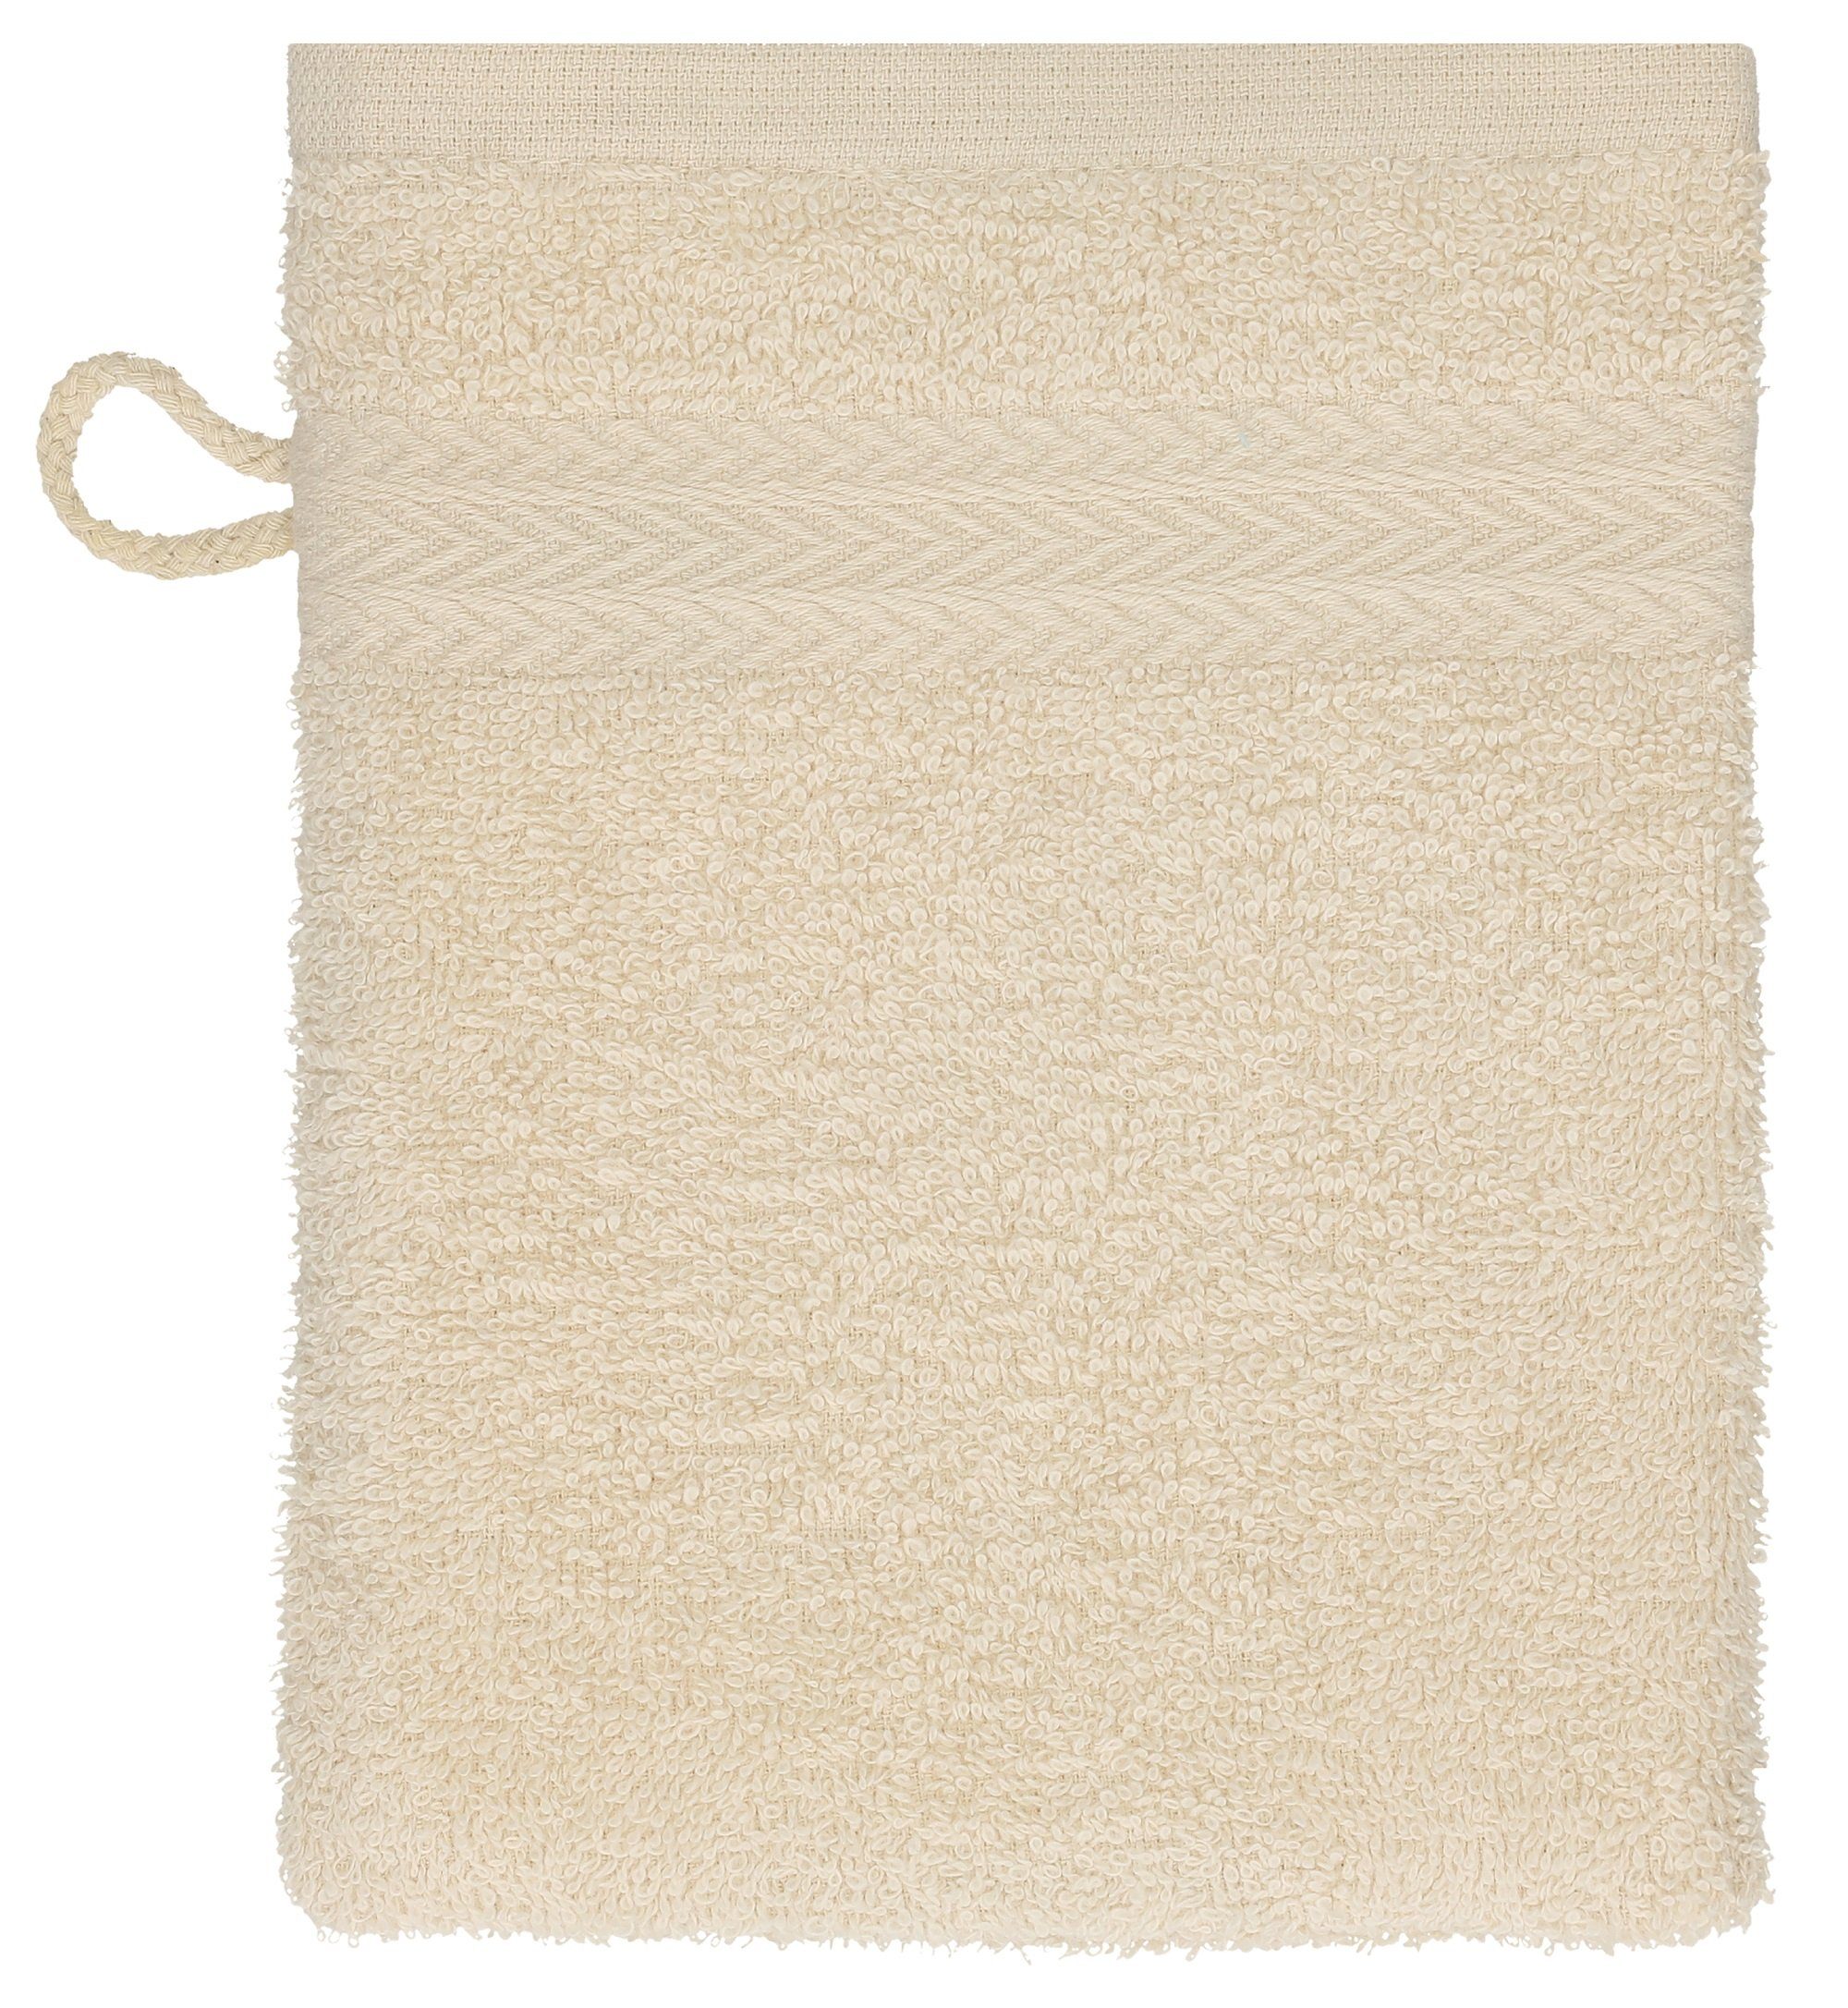 Haushalt Gesundheitsprodukte Betz Waschhandschuh 10 Stück Waschhandschuhe Waschlappen Set Premium 100% Baumwolle 16x21 cm Farbe 